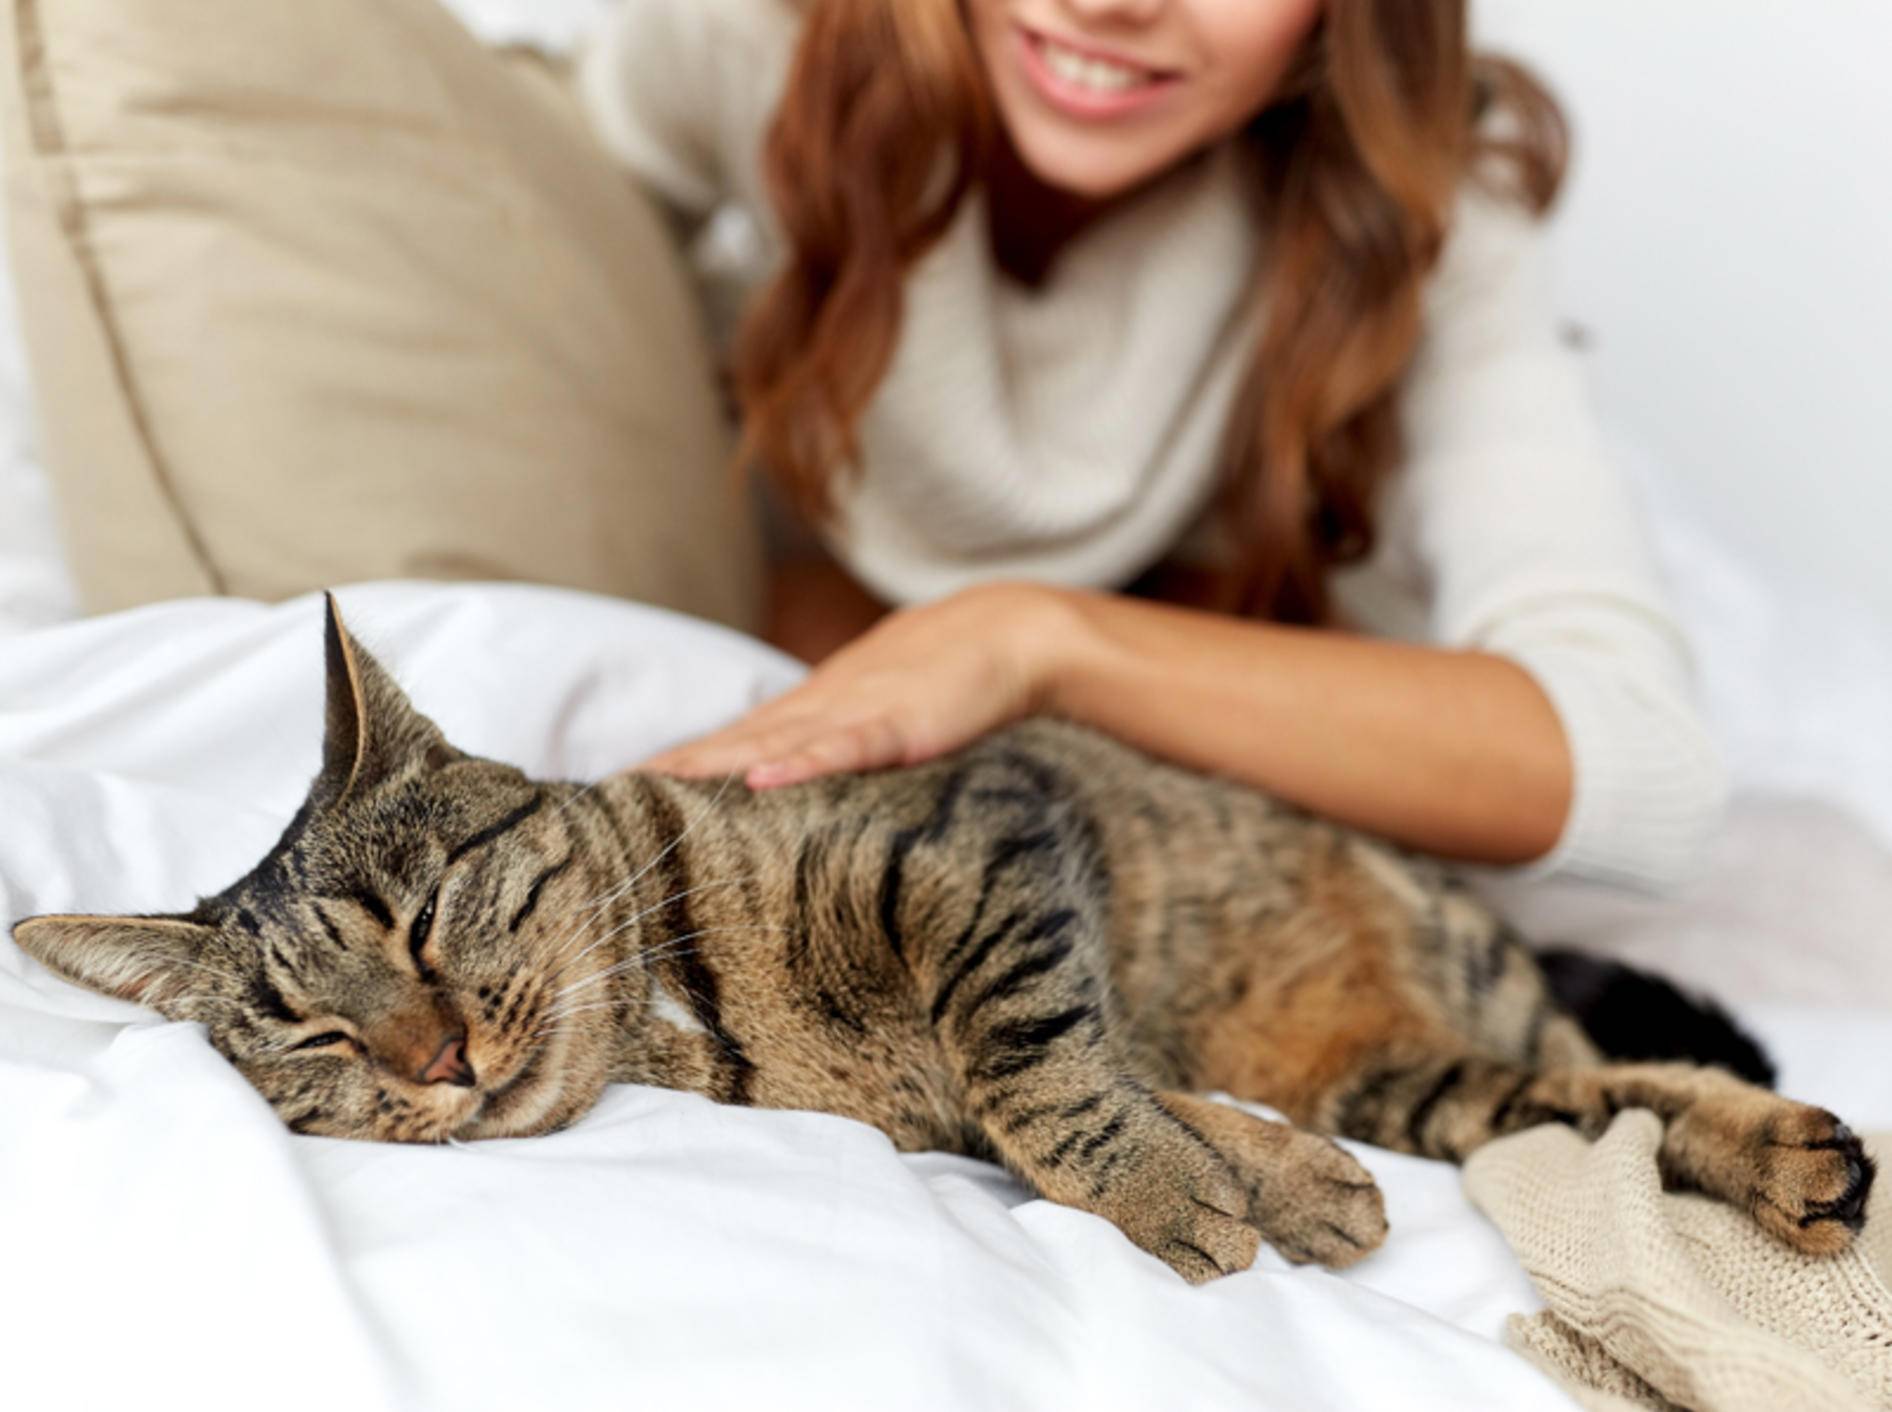 "Schnurr, ist das schön!", scheint diese glückliche Tabby-Katze zu denken – Shutterstock / Syda Productions